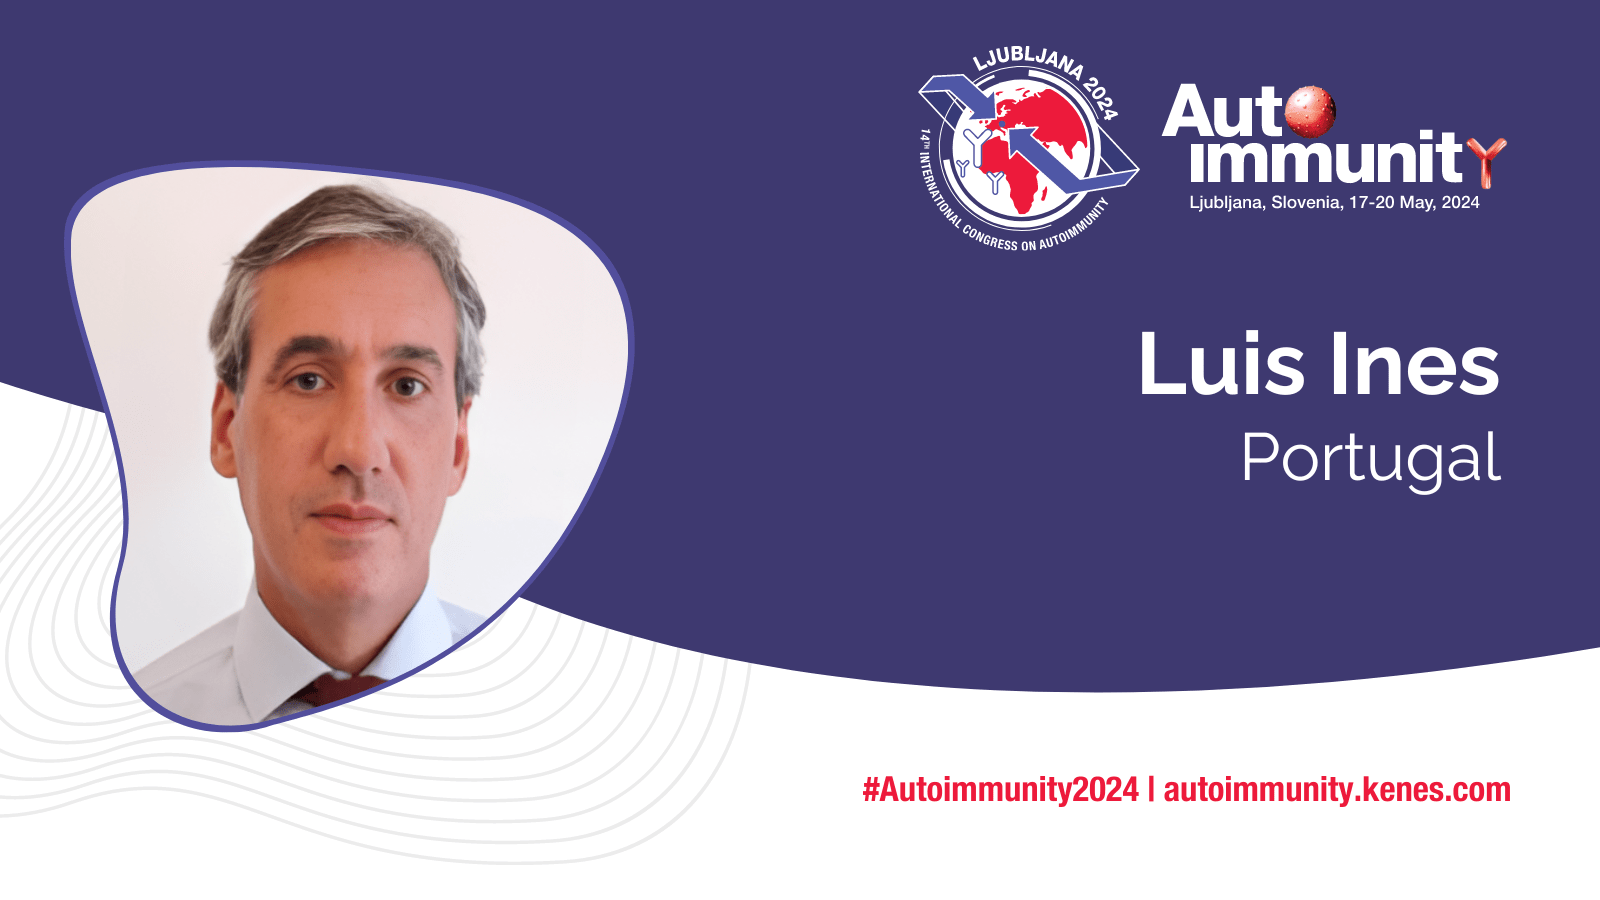 Luis Ines - speaker at Autoimmunity 2024